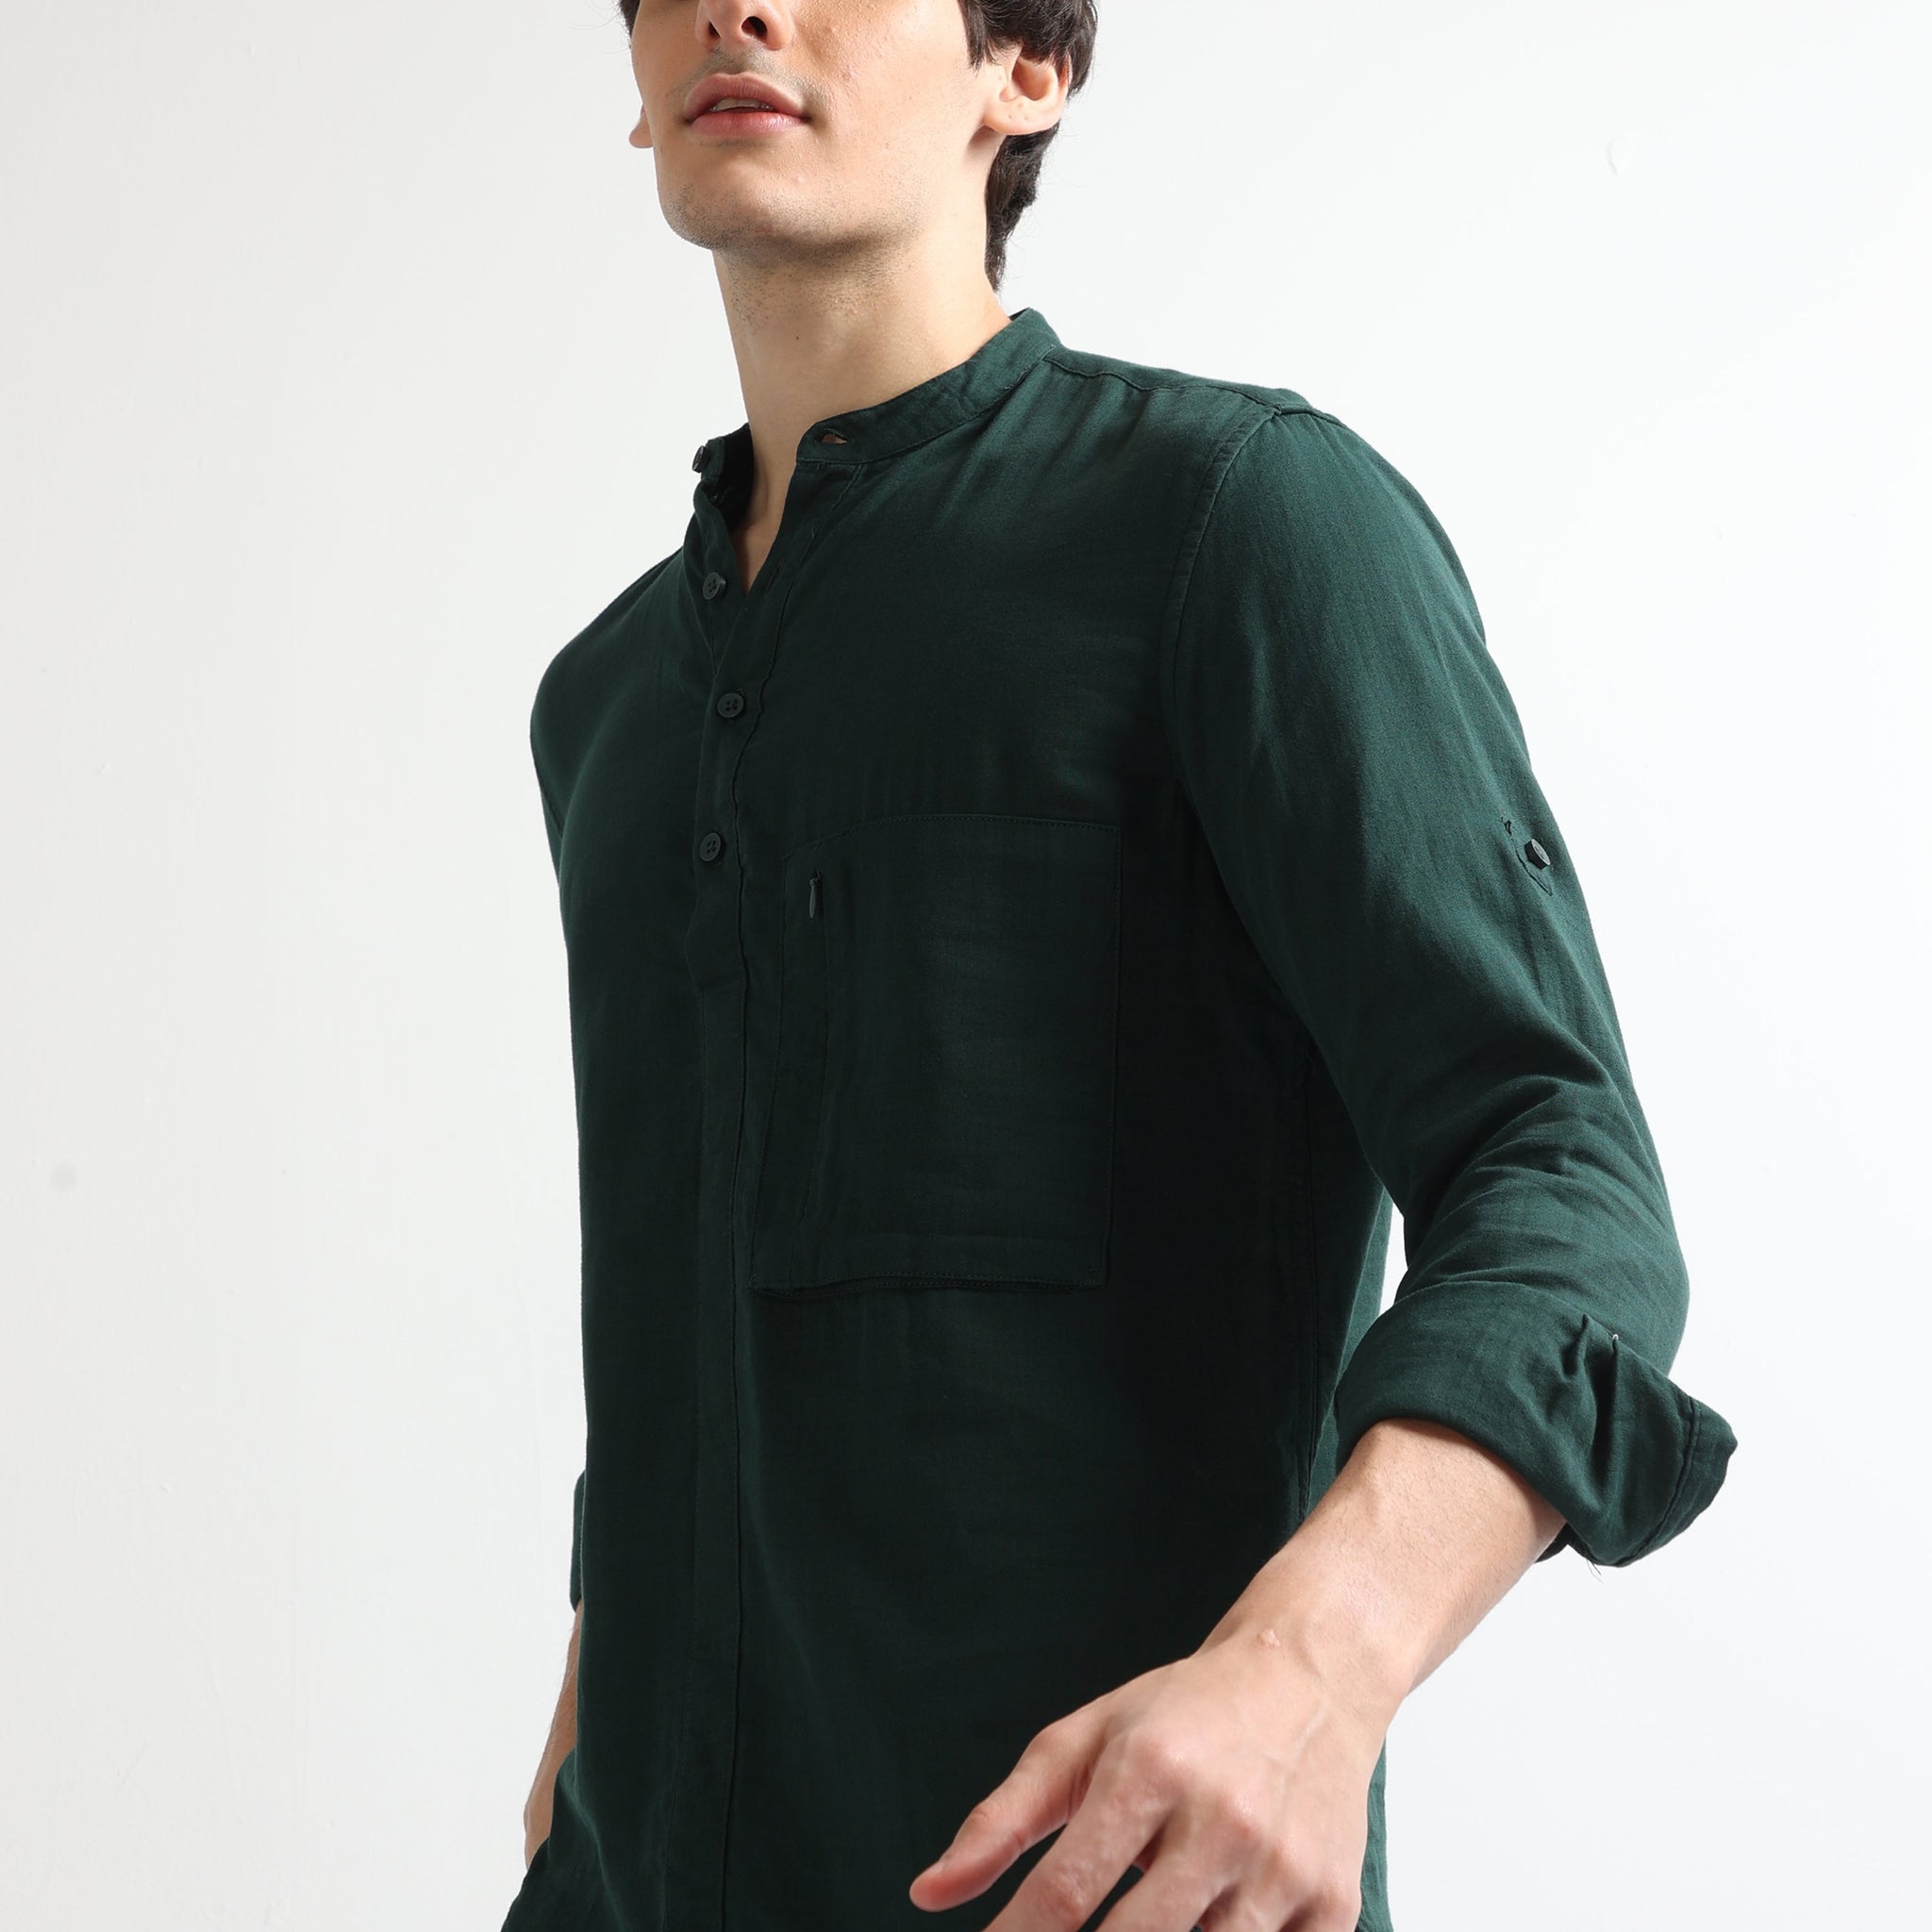 Buy Chinese Collar Brushed Stylish Shirt Online.